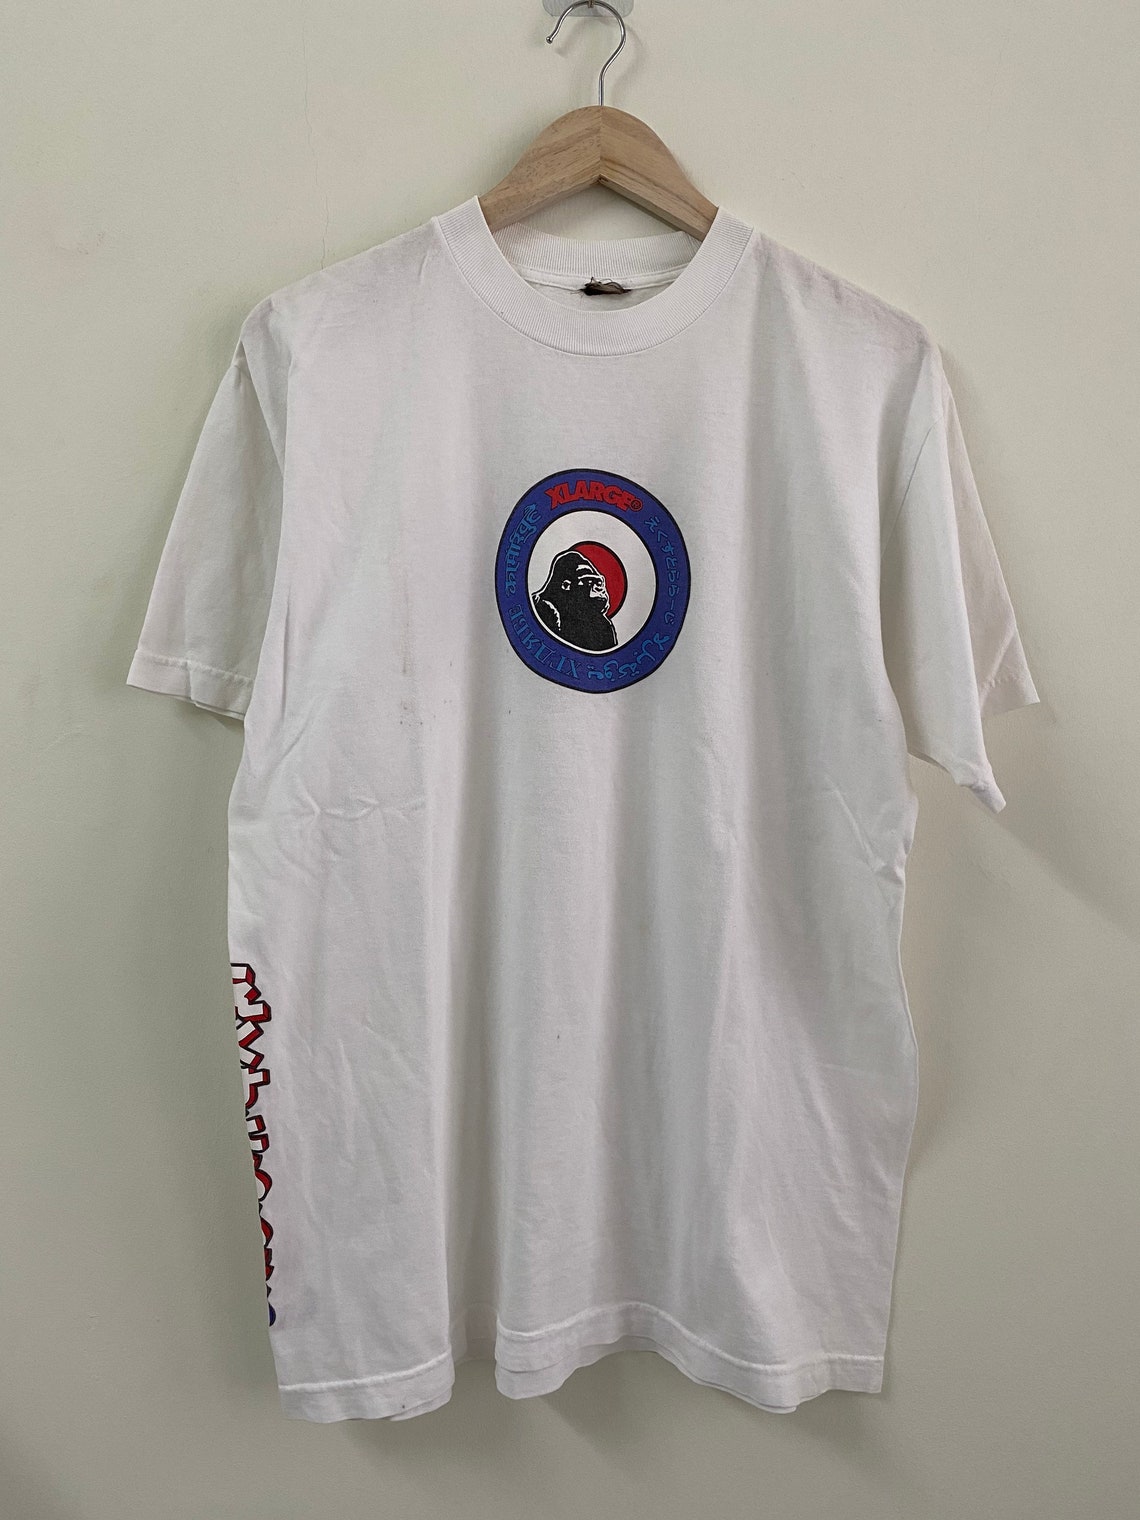 Vintage 90s Xlarge T shirt/ inspired mods logo/ vintage | Etsy